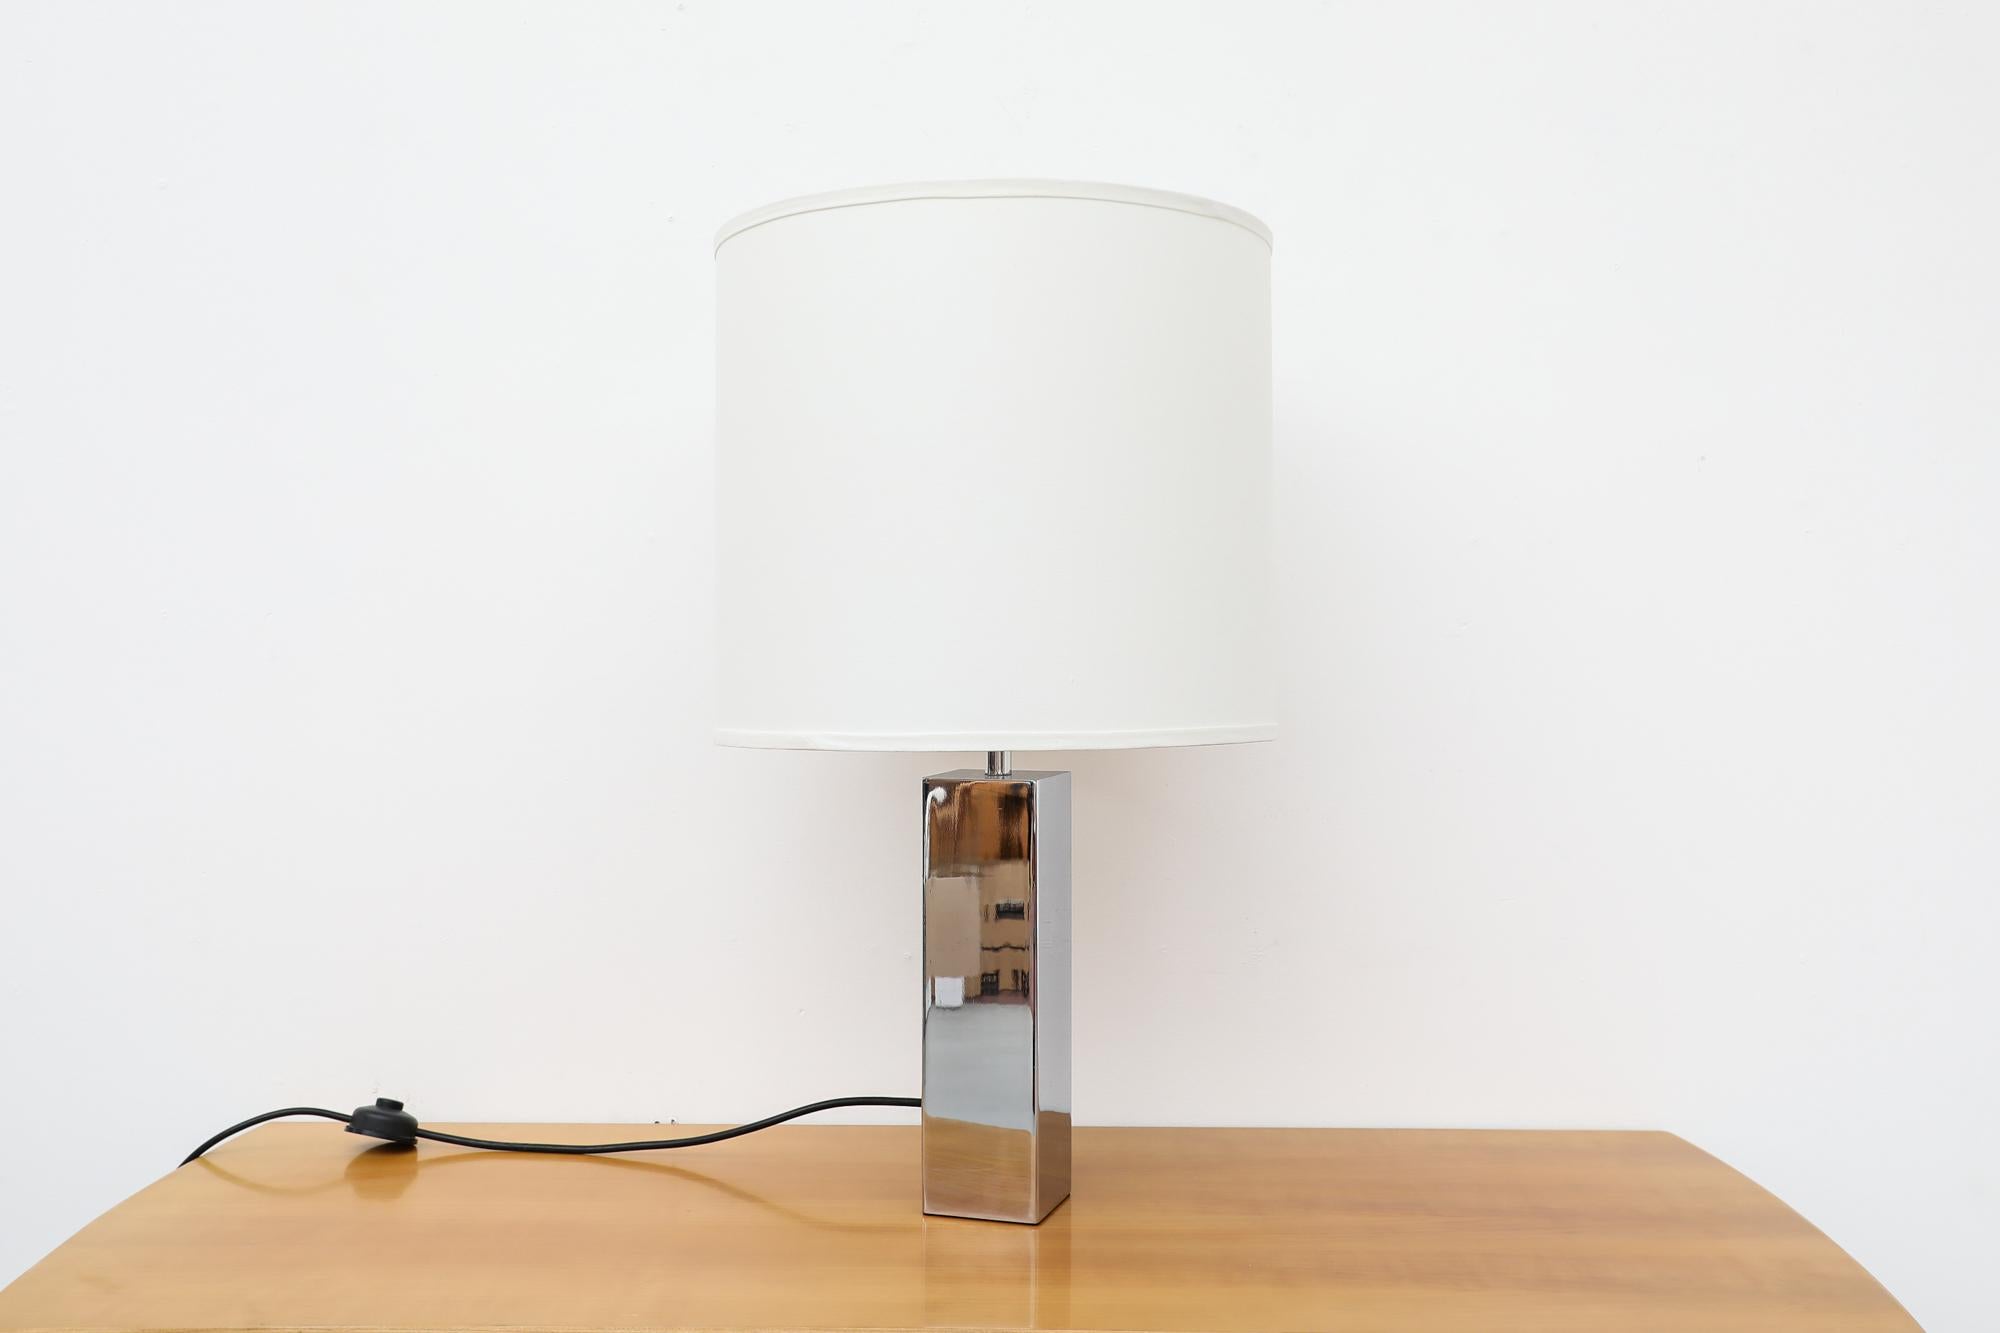 Superbe lampe de table du milieu du siècle conçue par Goffredo Reggiani pour Reggiani. Base de colonne carrée en chrome poli avec deux prises de courant offrant deux niveaux d'éclairage et une illumination bien équilibrée. Lampe de table moderniste